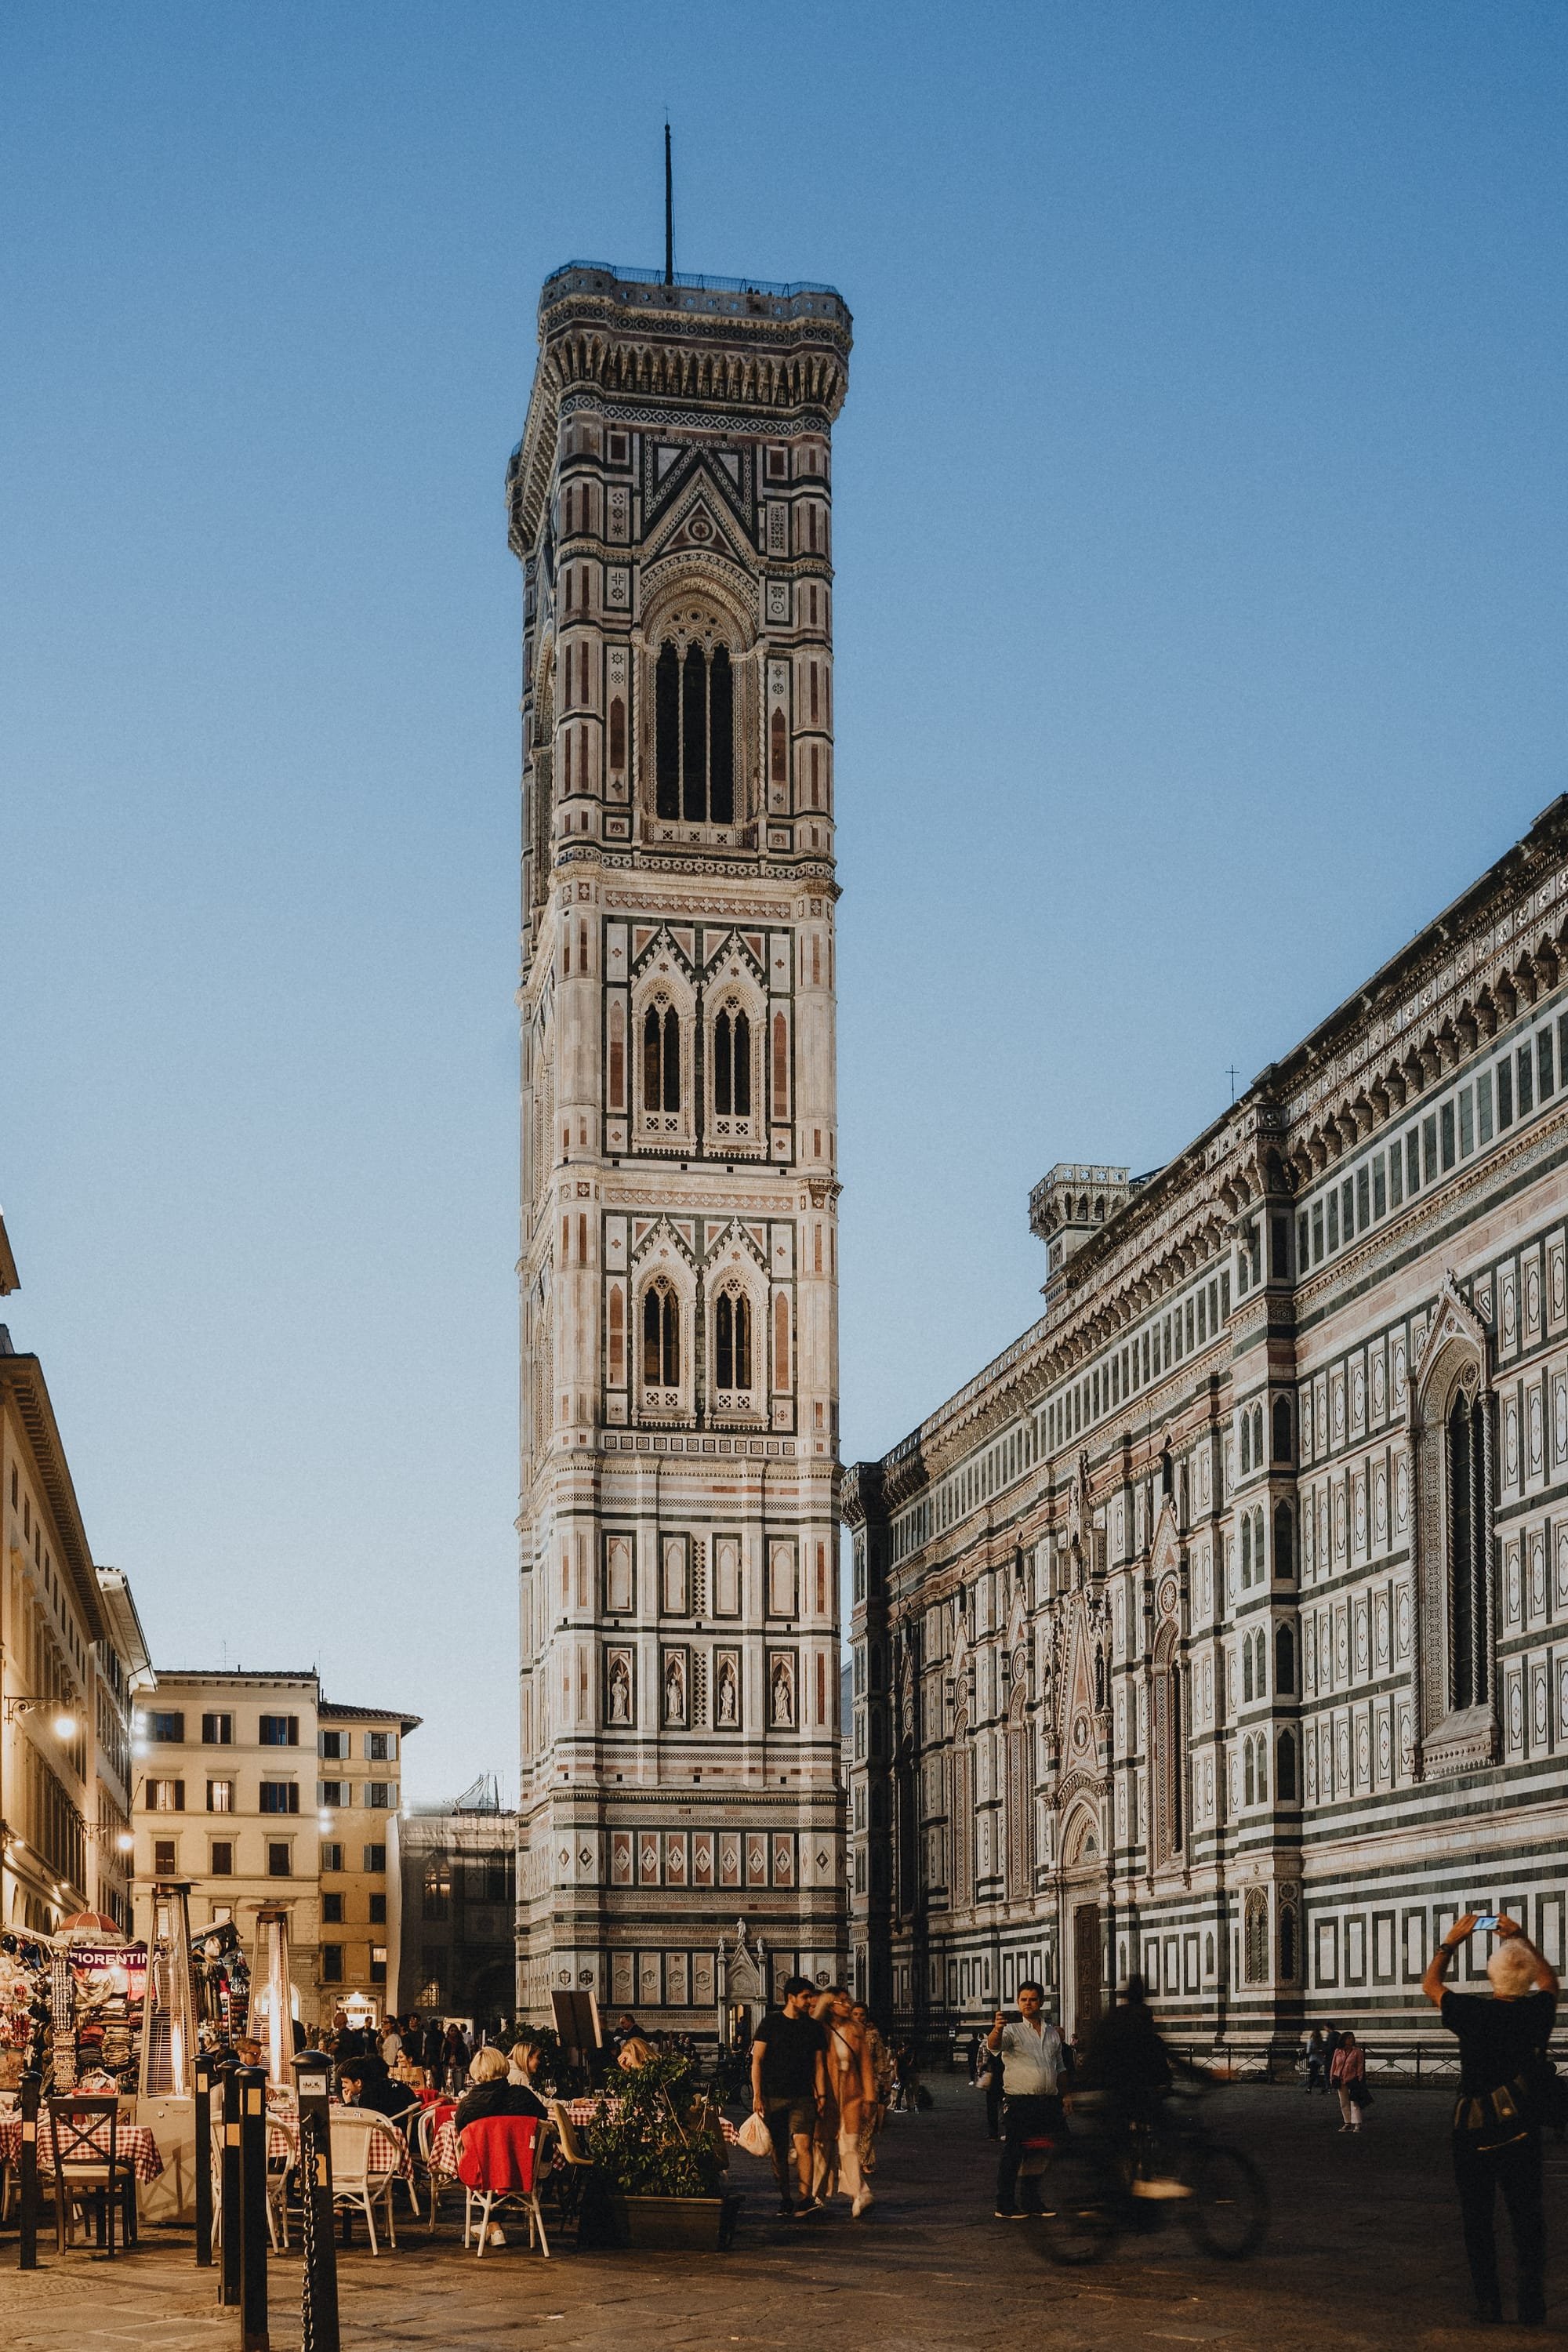 La pittura di Giotto: Assisi, Firenze, Padova